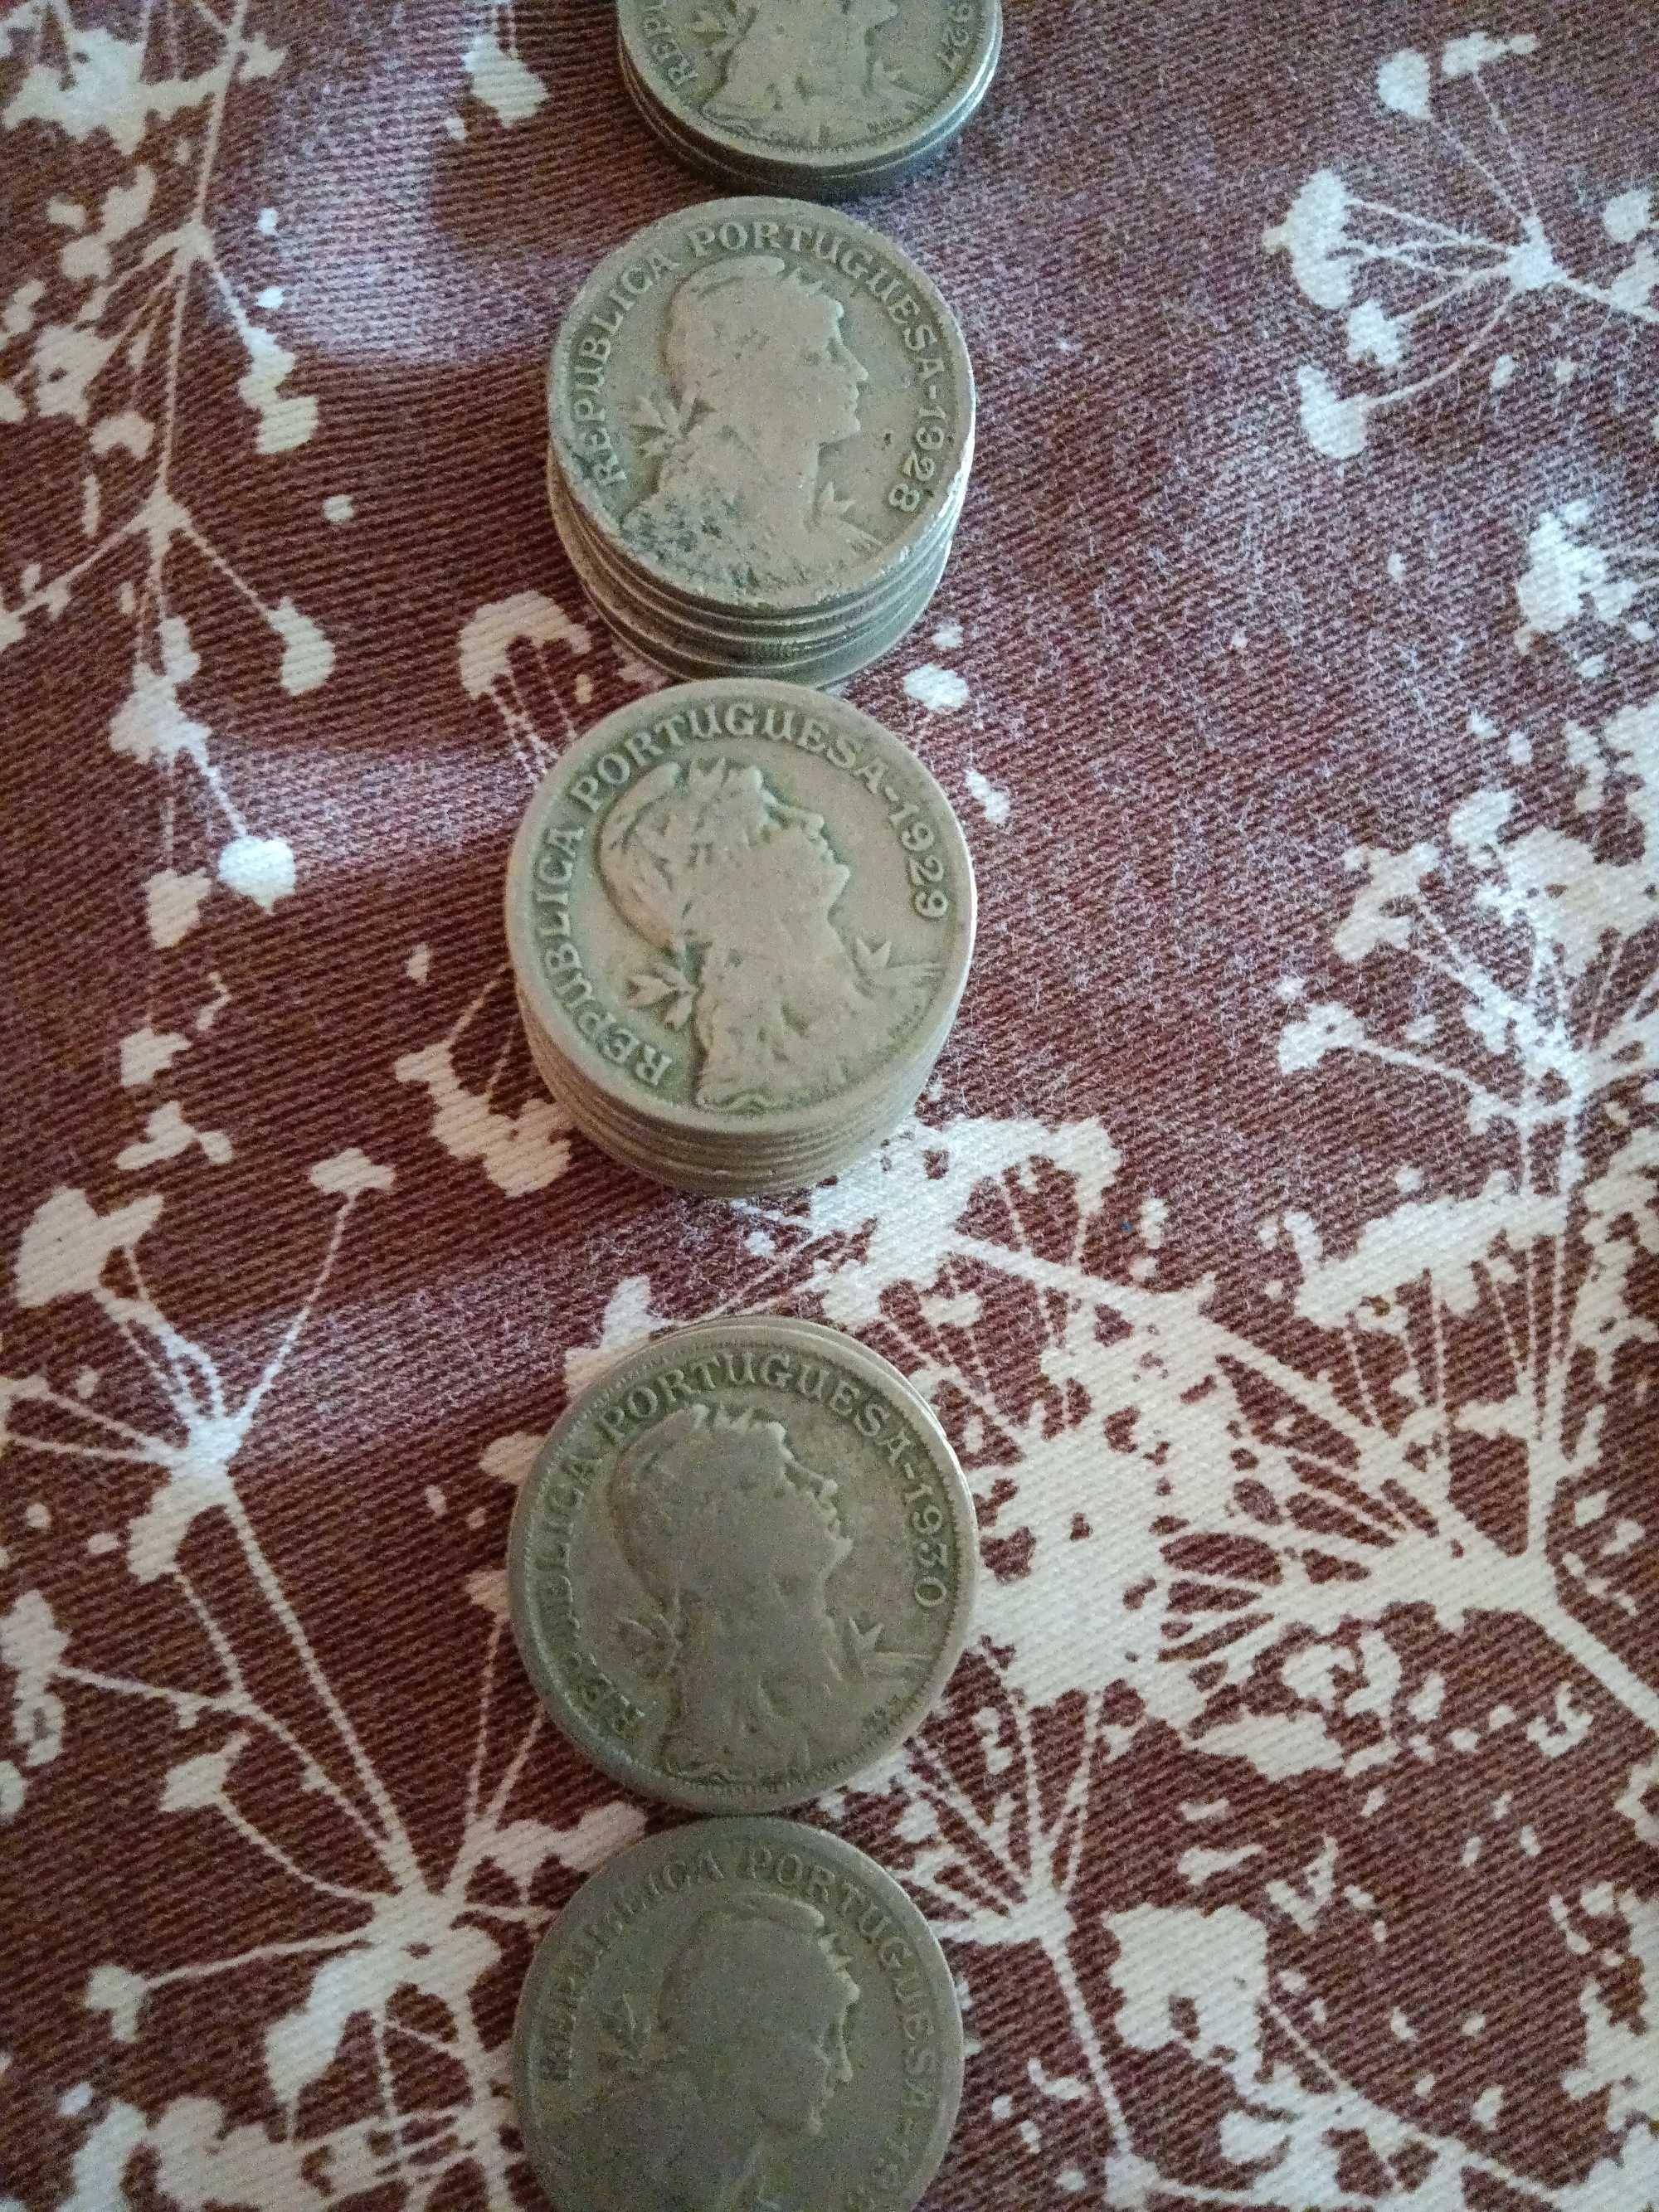 428 moedas portuguesas várias datas e valores